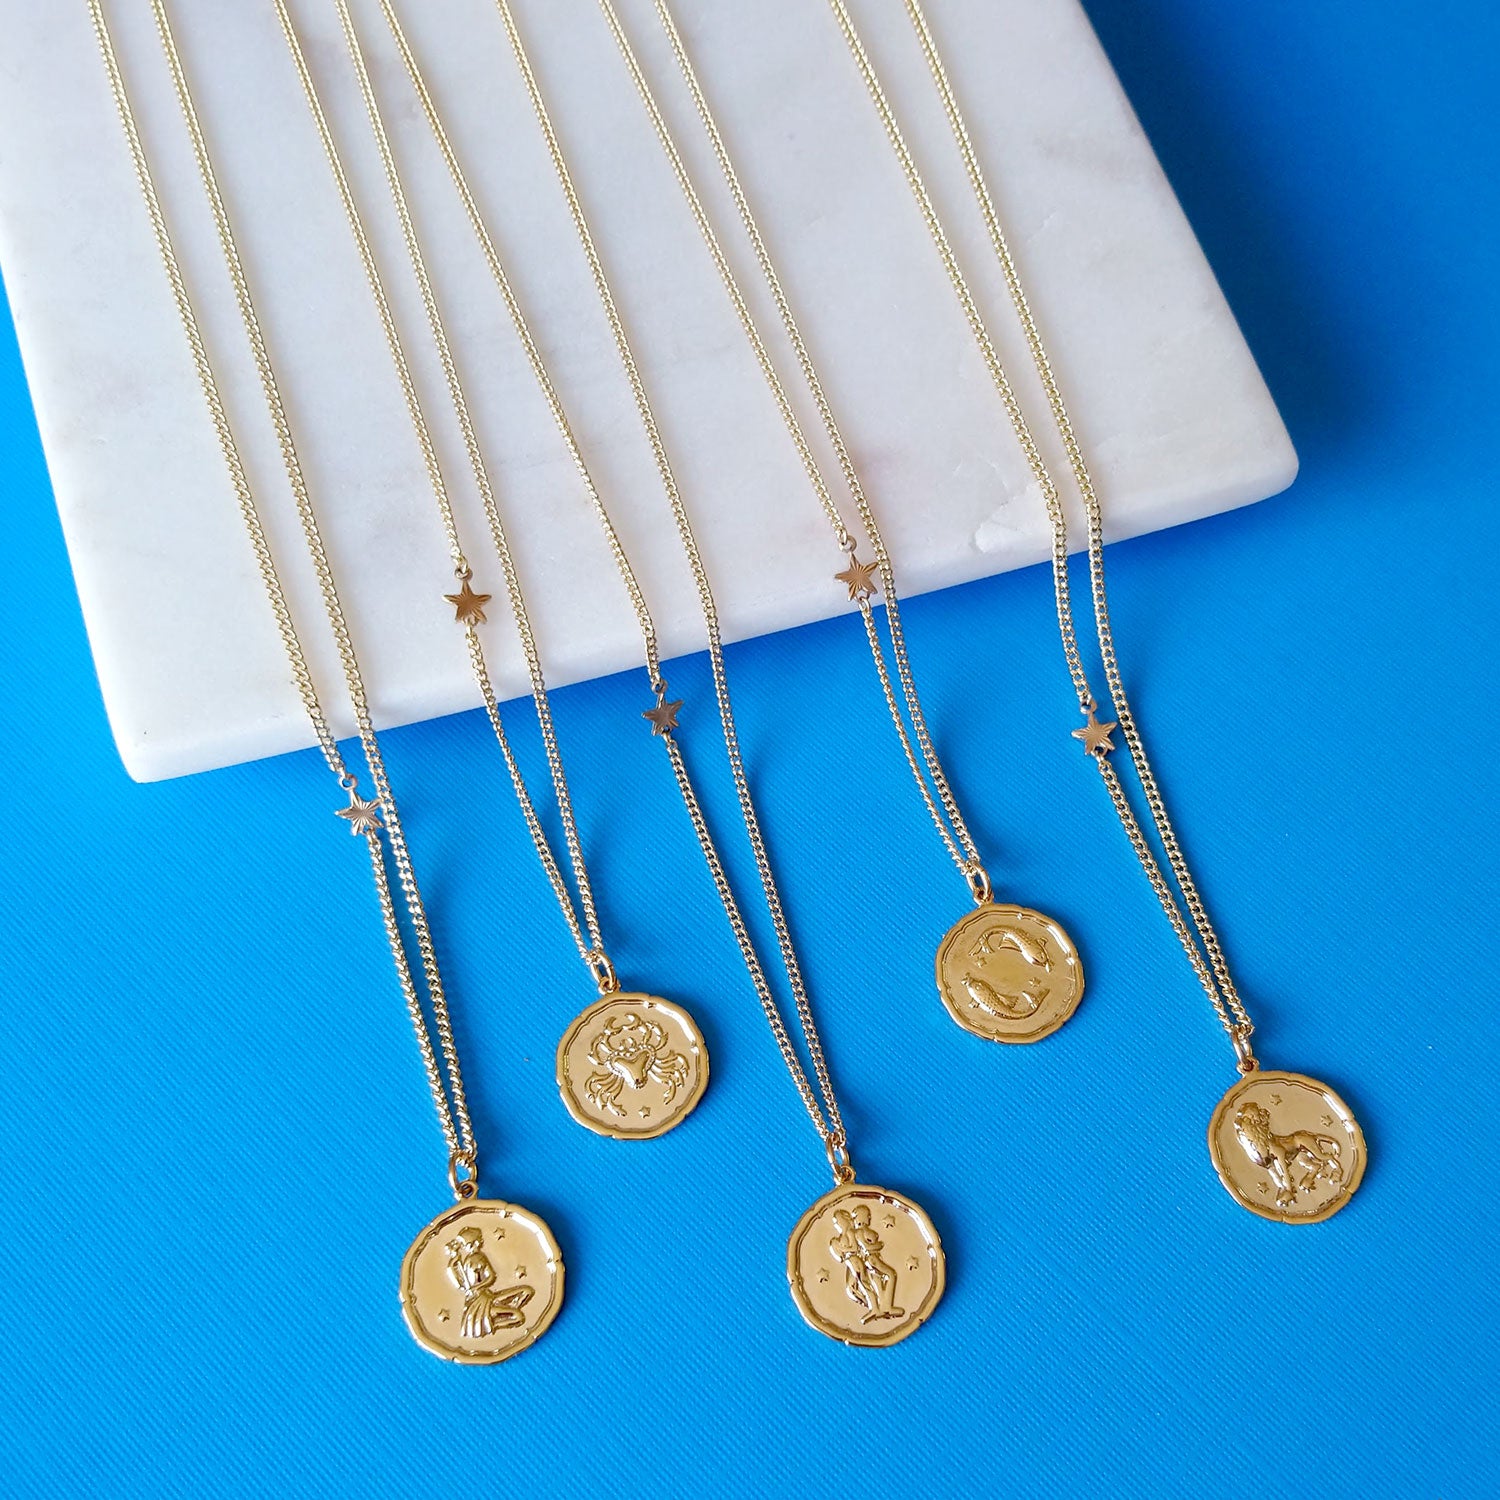 Zodiac coin necklace gold pendant